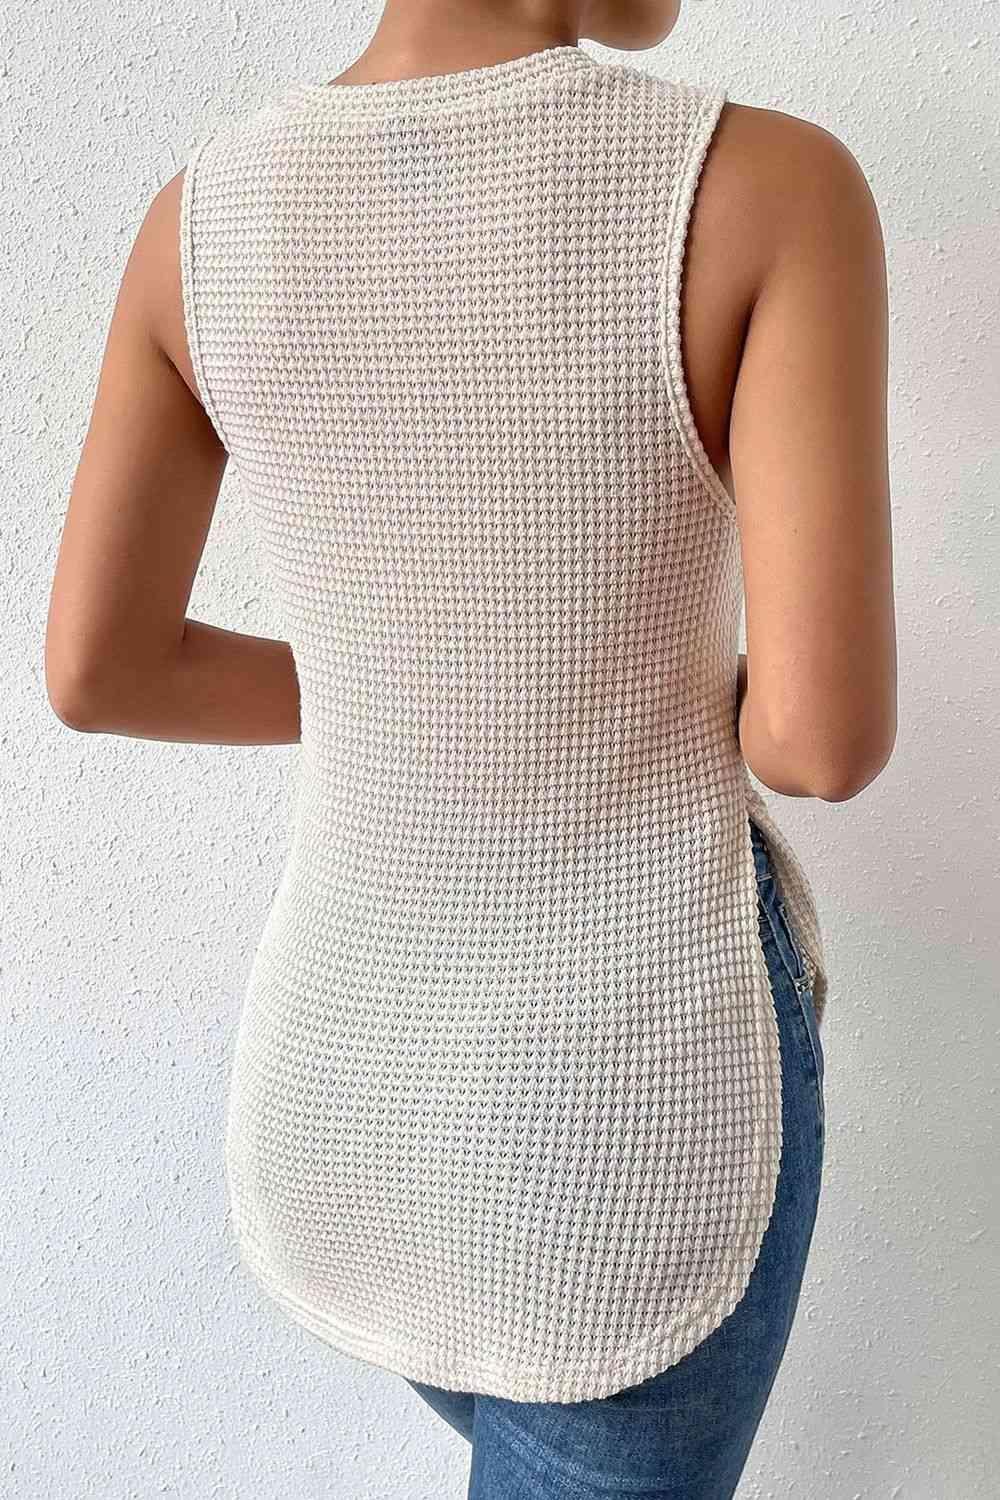 a woman wearing a white knit tank top